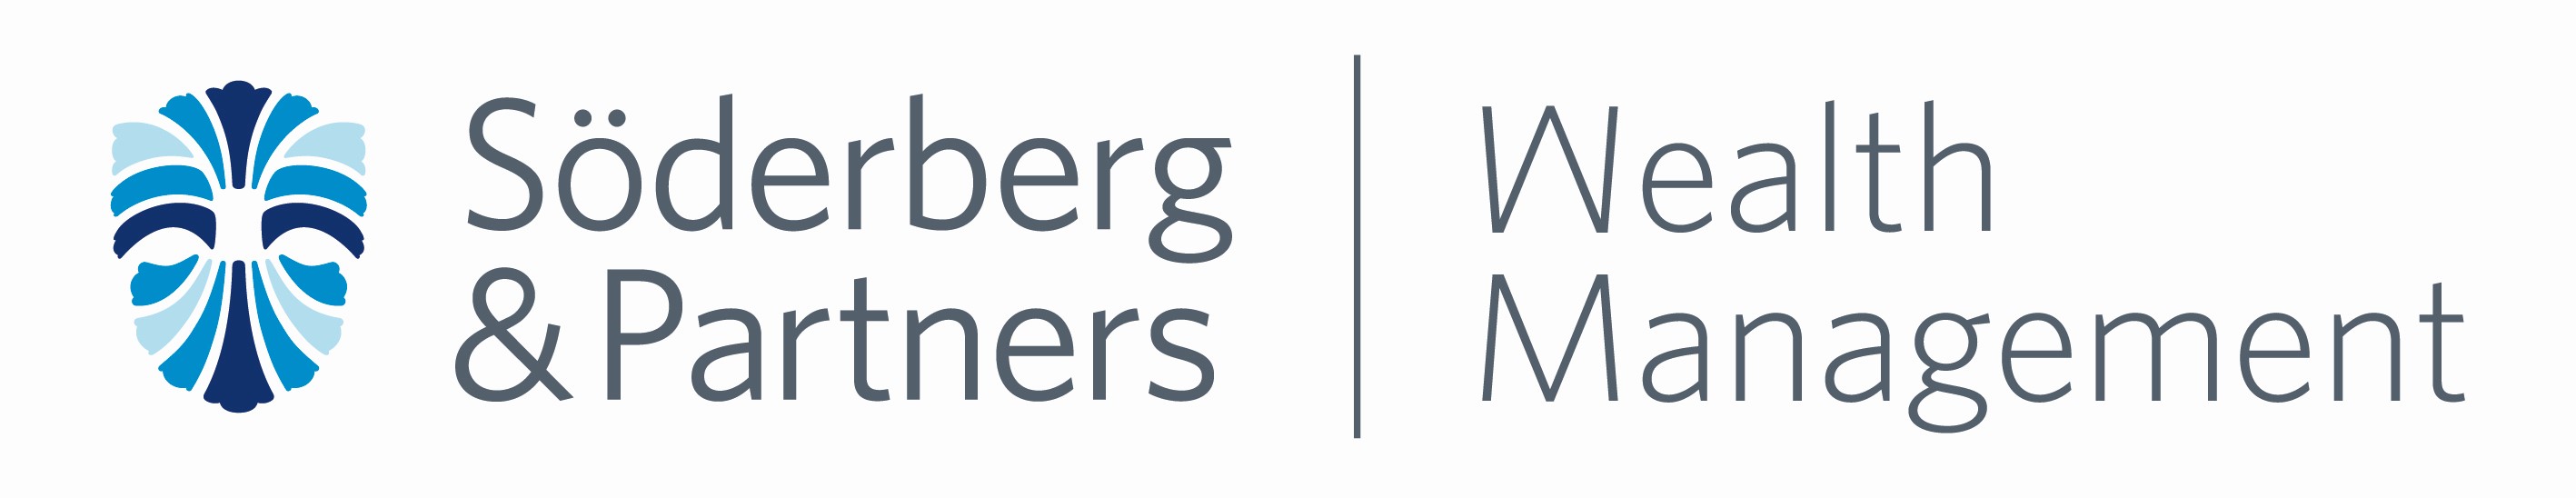 Søderberg & Partners